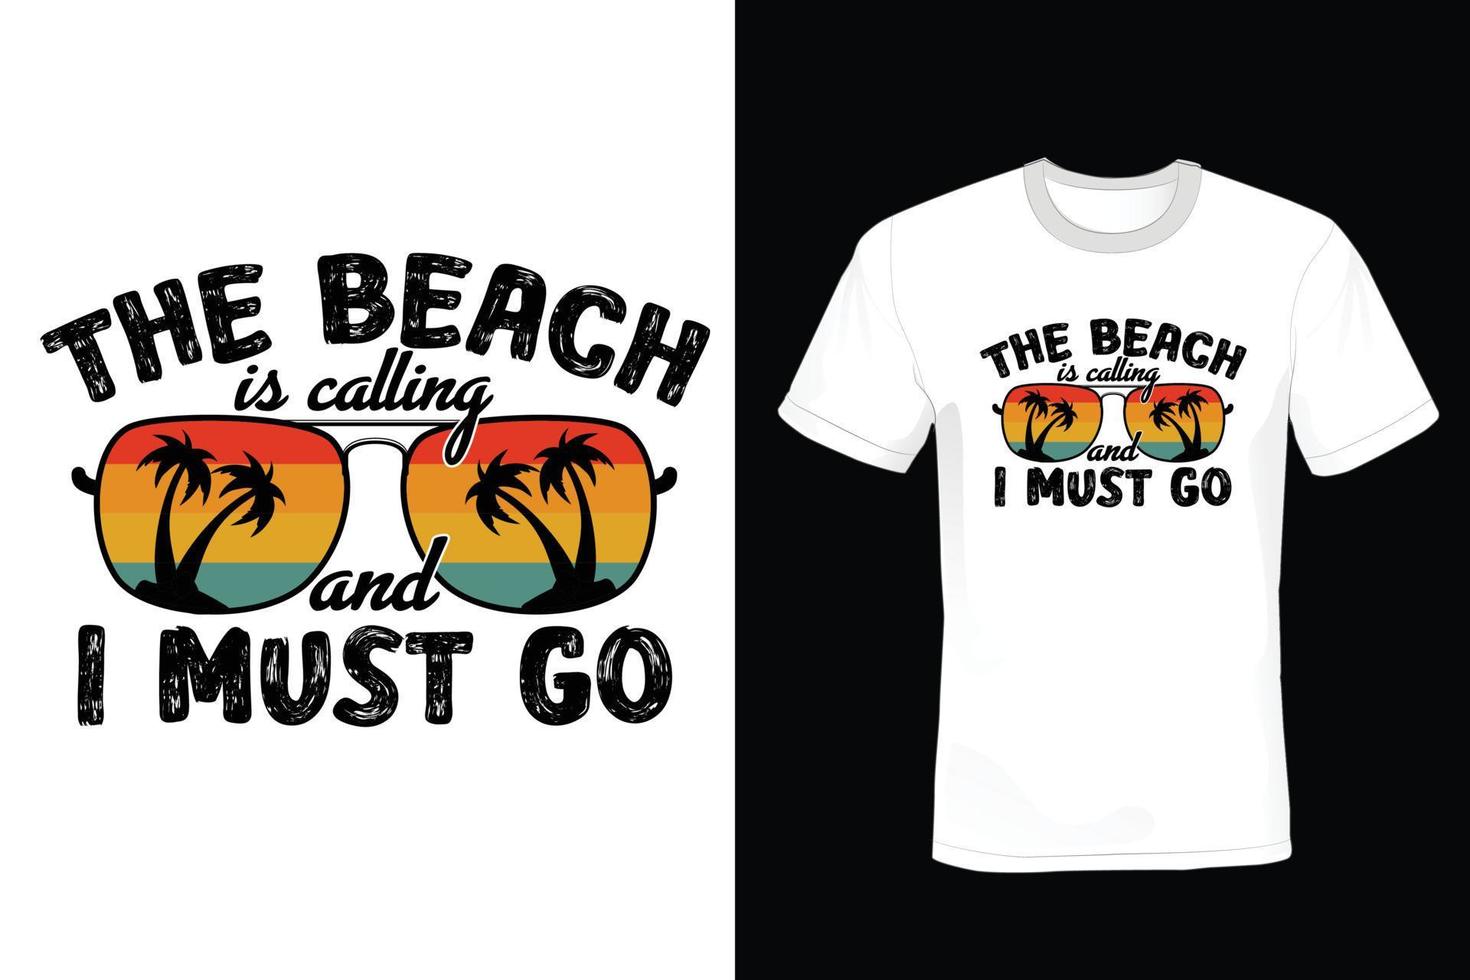 conception de t-shirt de plage, vintage, typographie vecteur